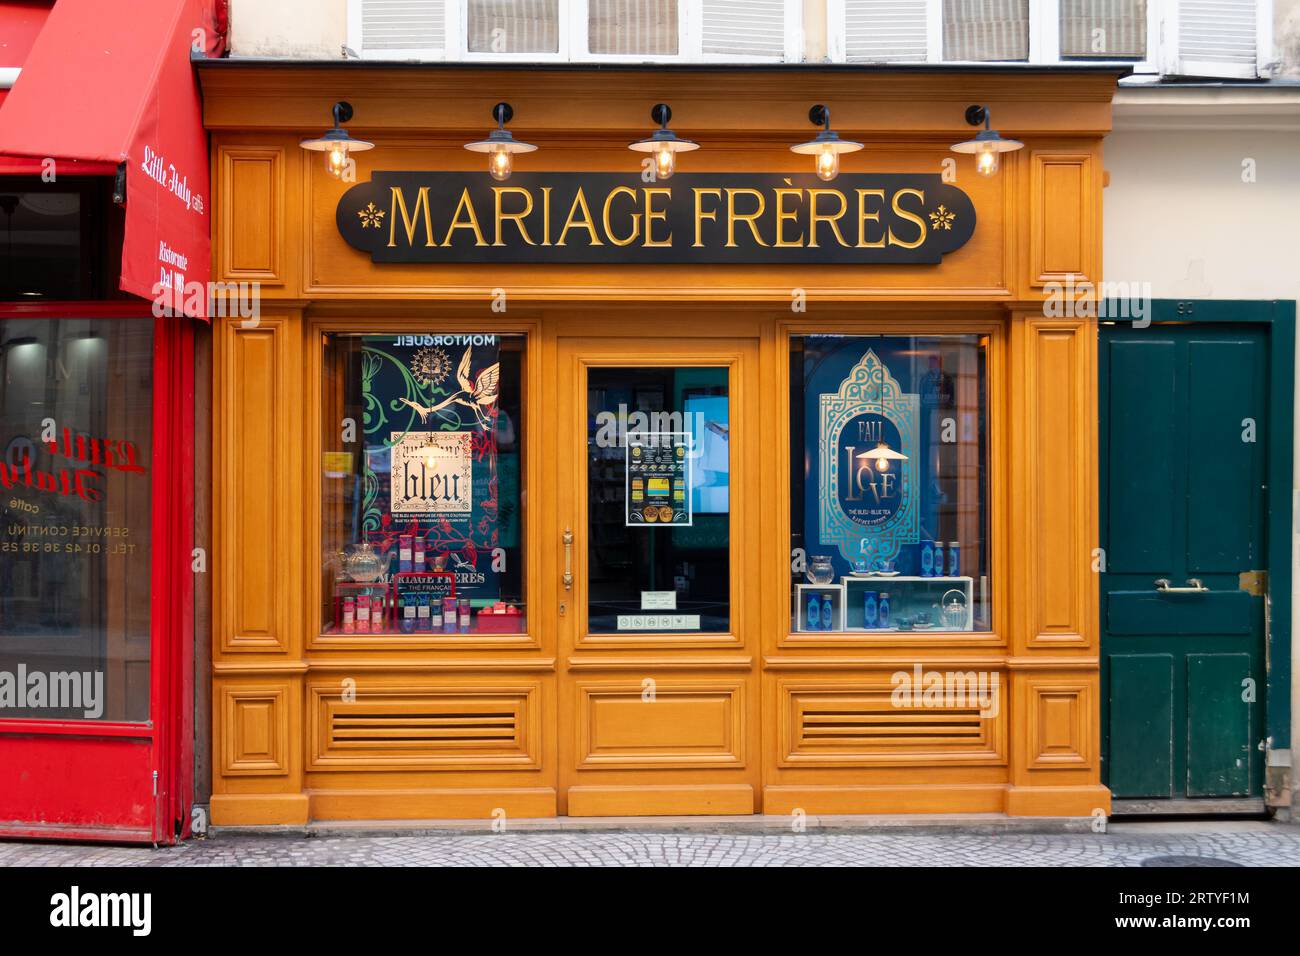 Vue extérieure de la boutique mariage Frères située rue Montorgueil à Paris, France. Mariage Frères est une maison de thé de luxe fondée à Paris en 1854 Banque D'Images